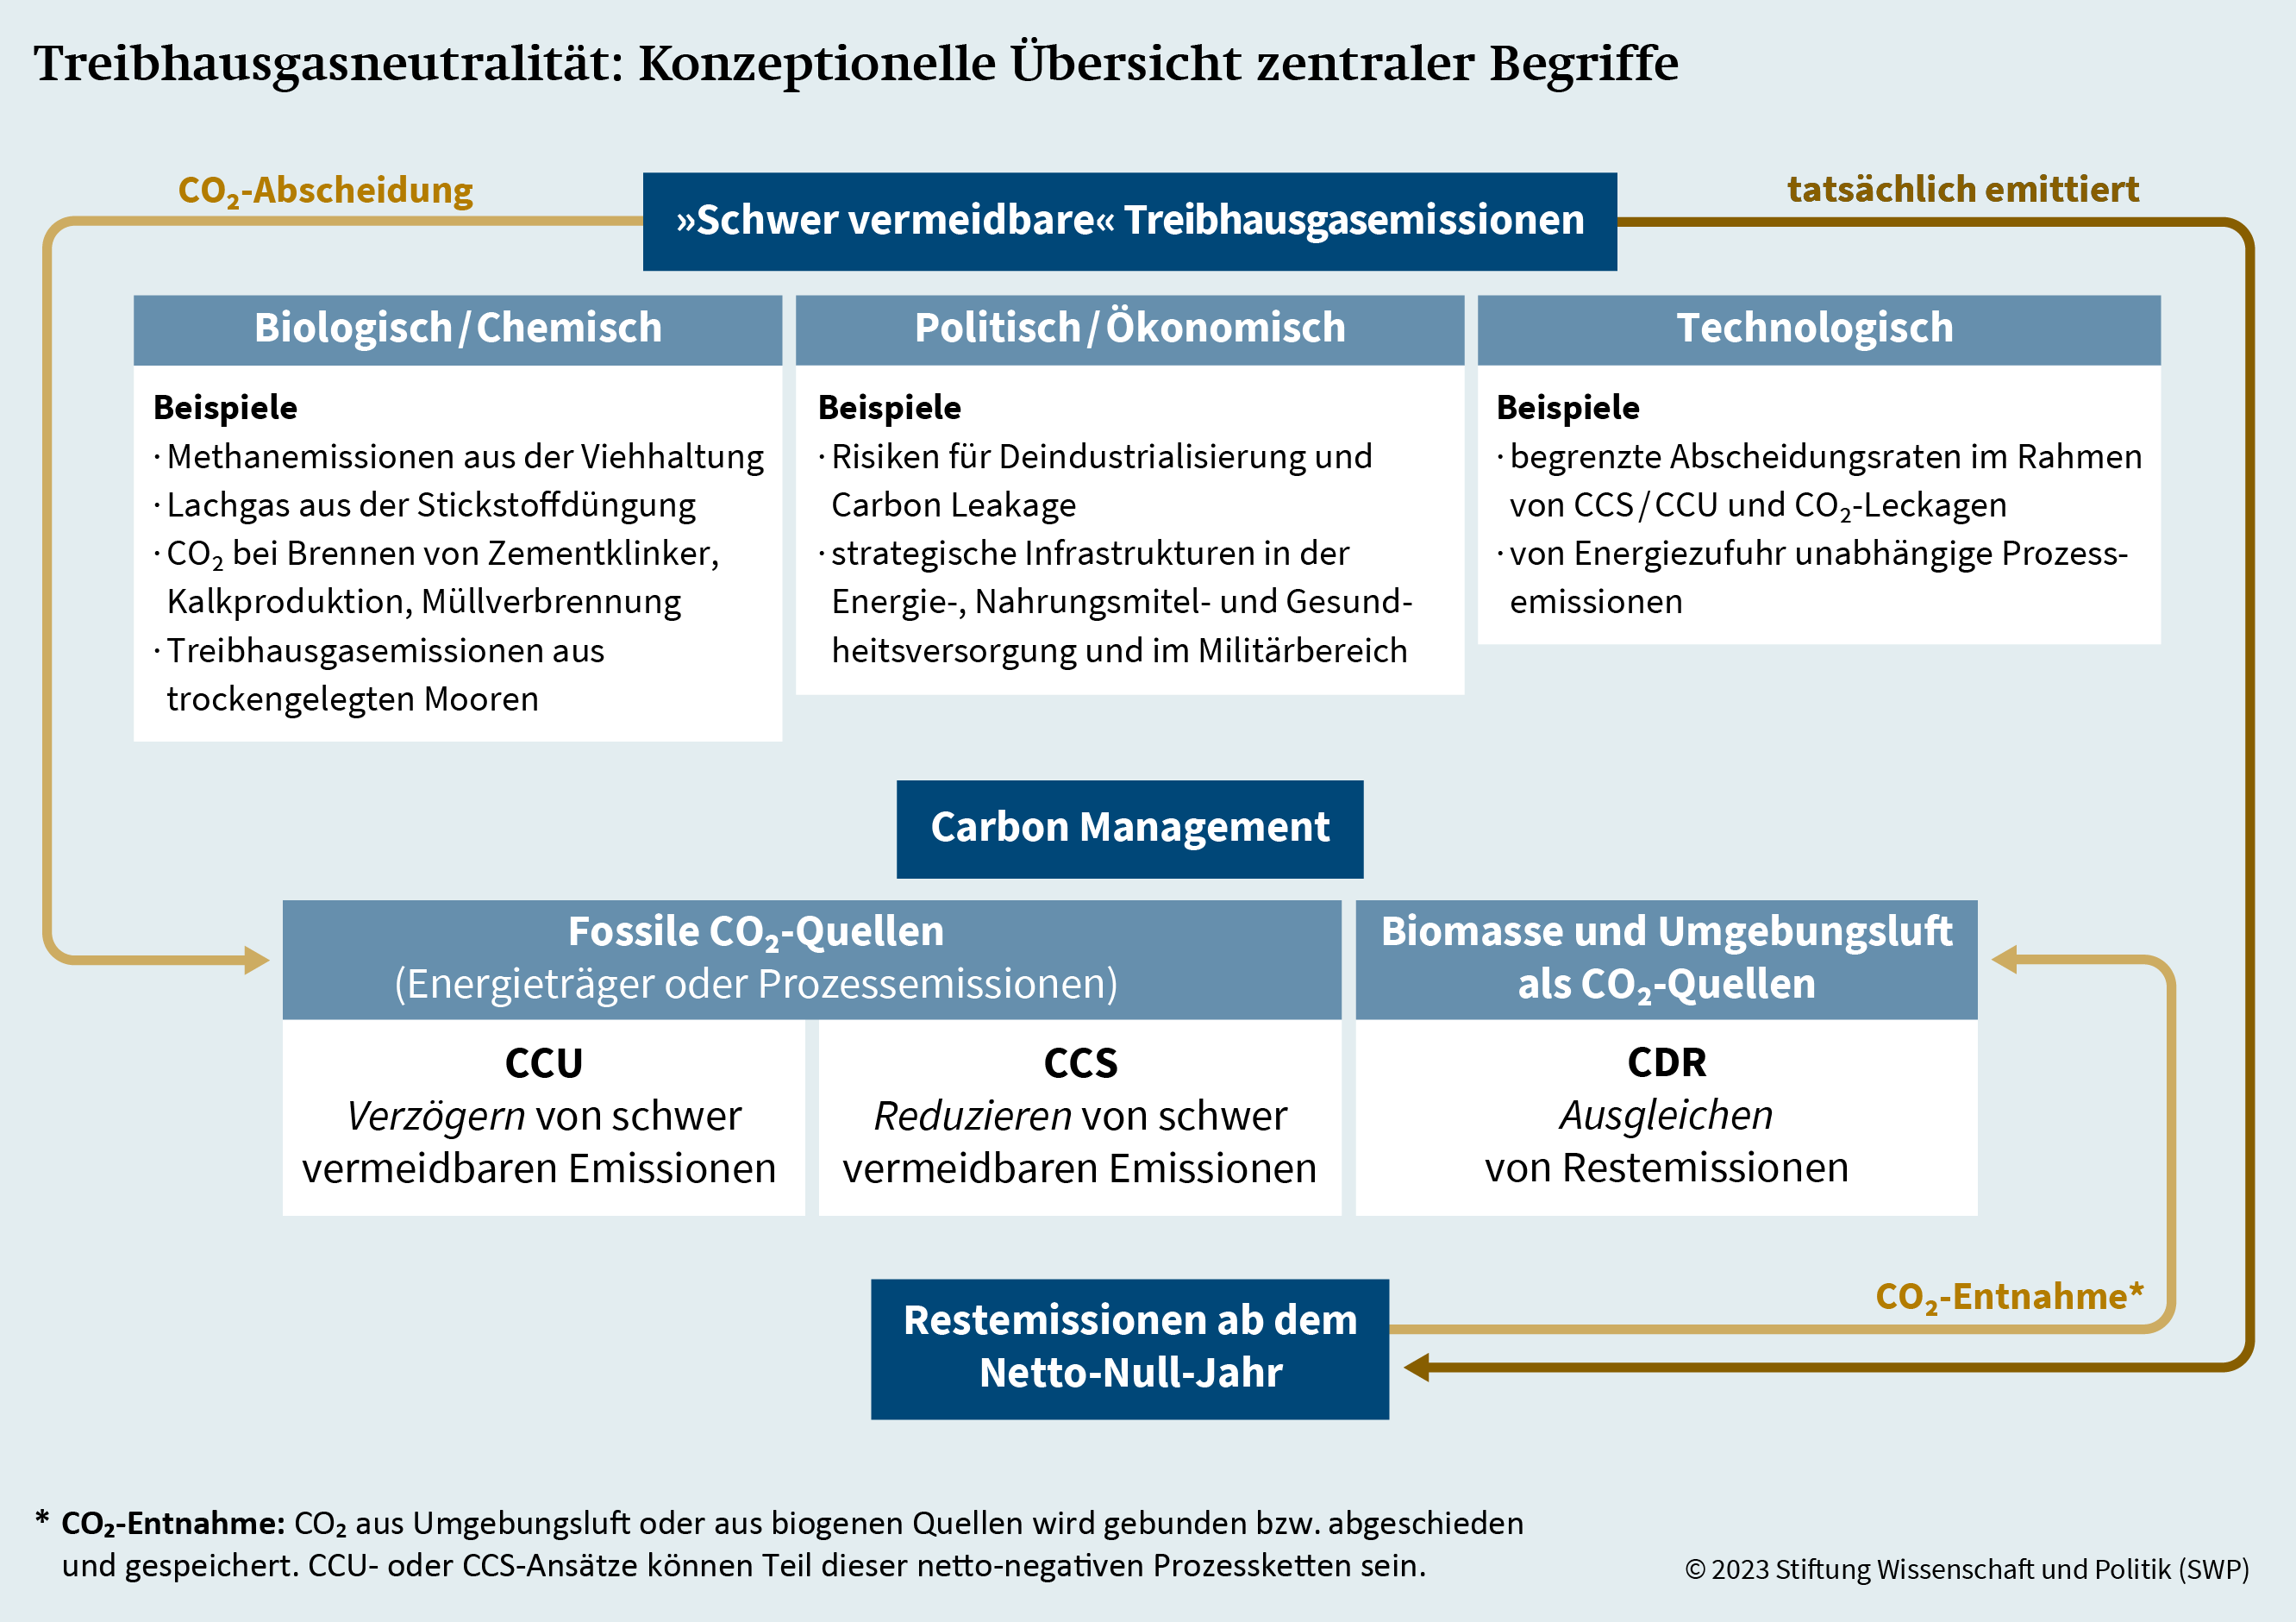 Grafik 1: Treibhausgasneutralität: Konzeptionelle Übersicht zentraler Begriffe